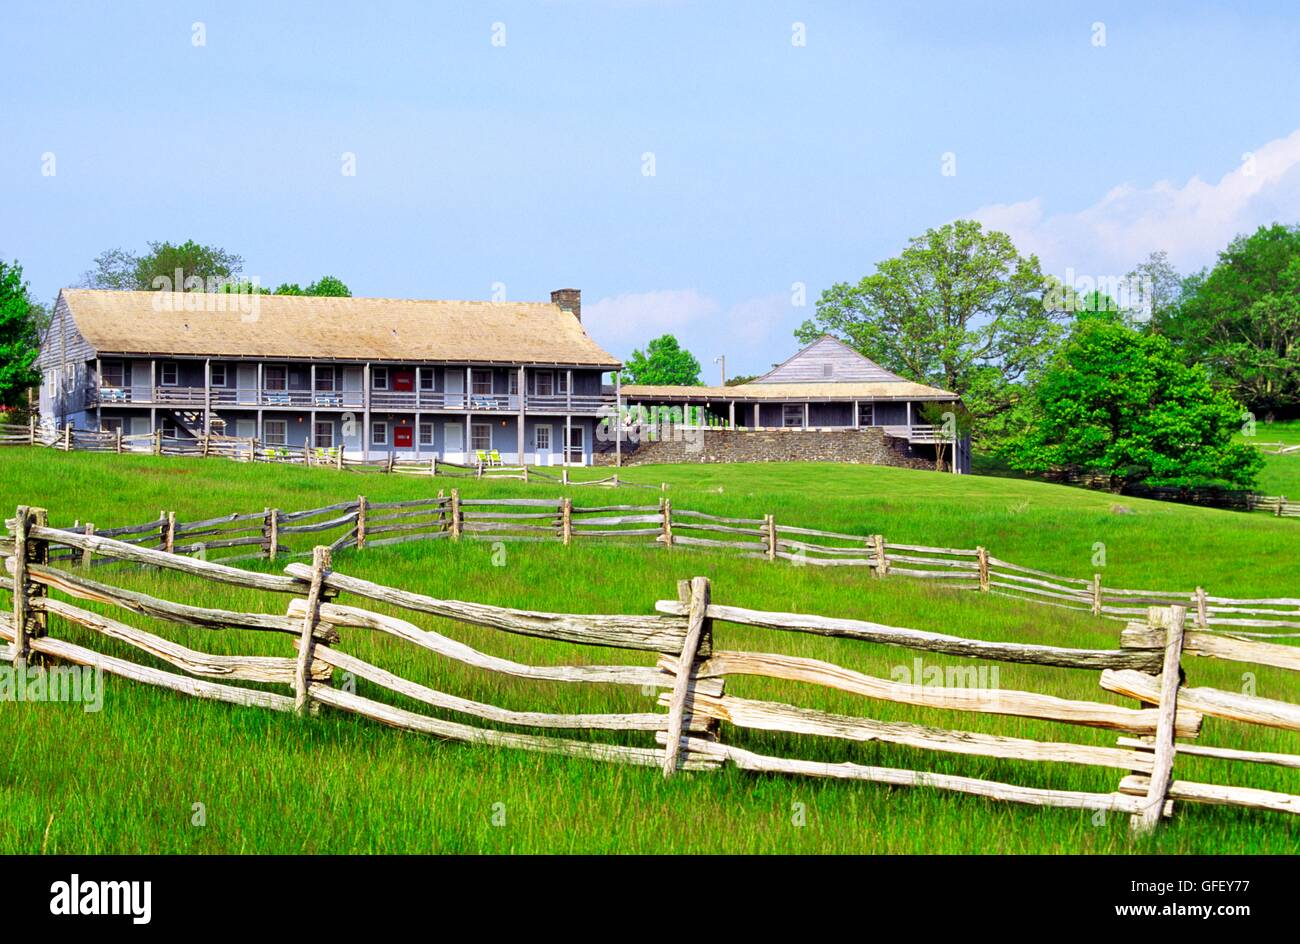 Bluffs lodge hotel storico e ristorante nel parco doughton su Blue Ridge Parkway in North Carolina, Stati Uniti d'America Foto Stock